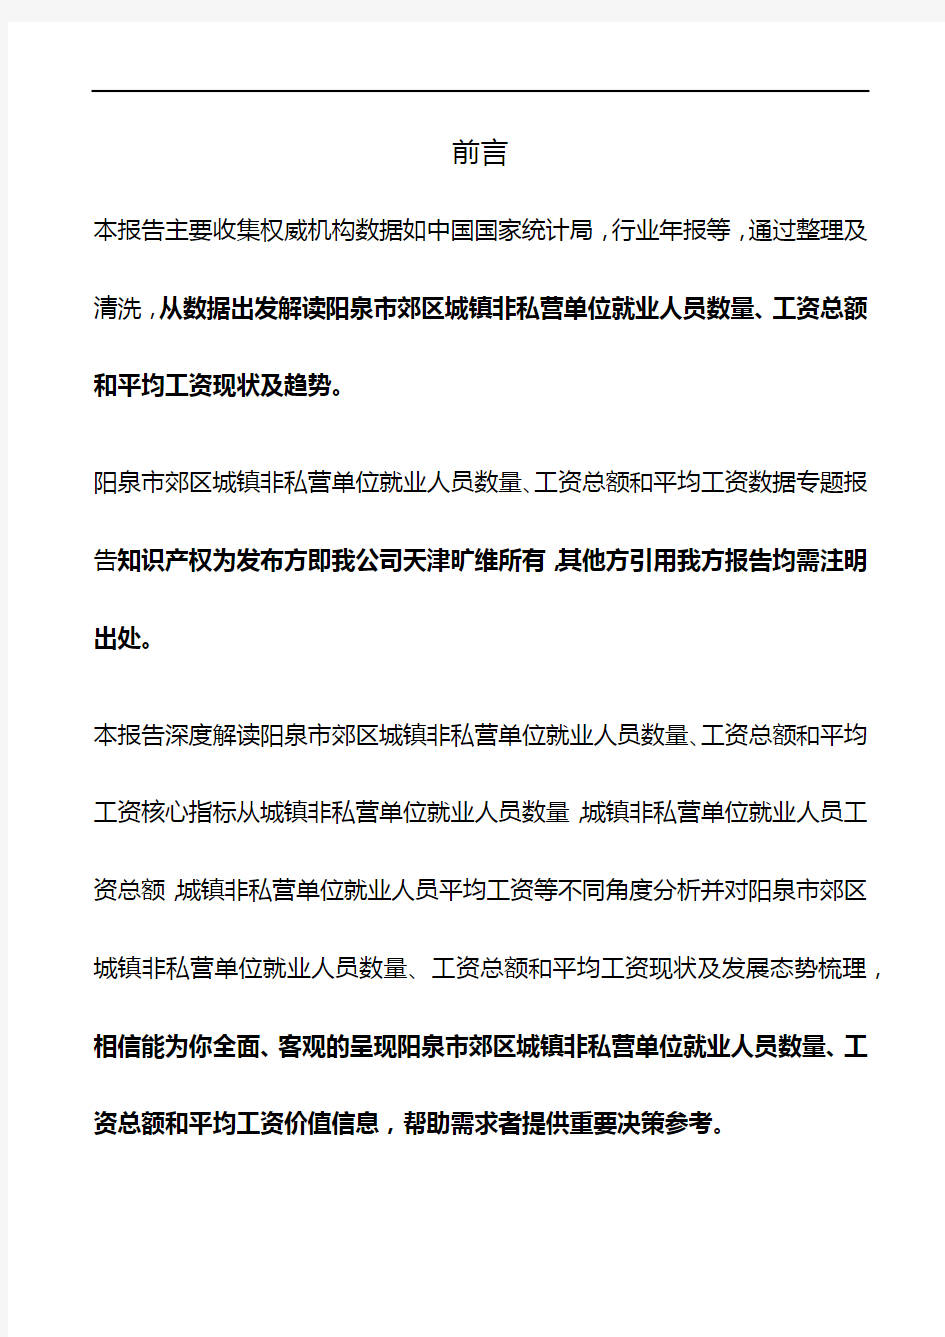 山西省阳泉市郊区城镇非私营单位就业人员数量、工资总额和平均工资数据专题报告2020版